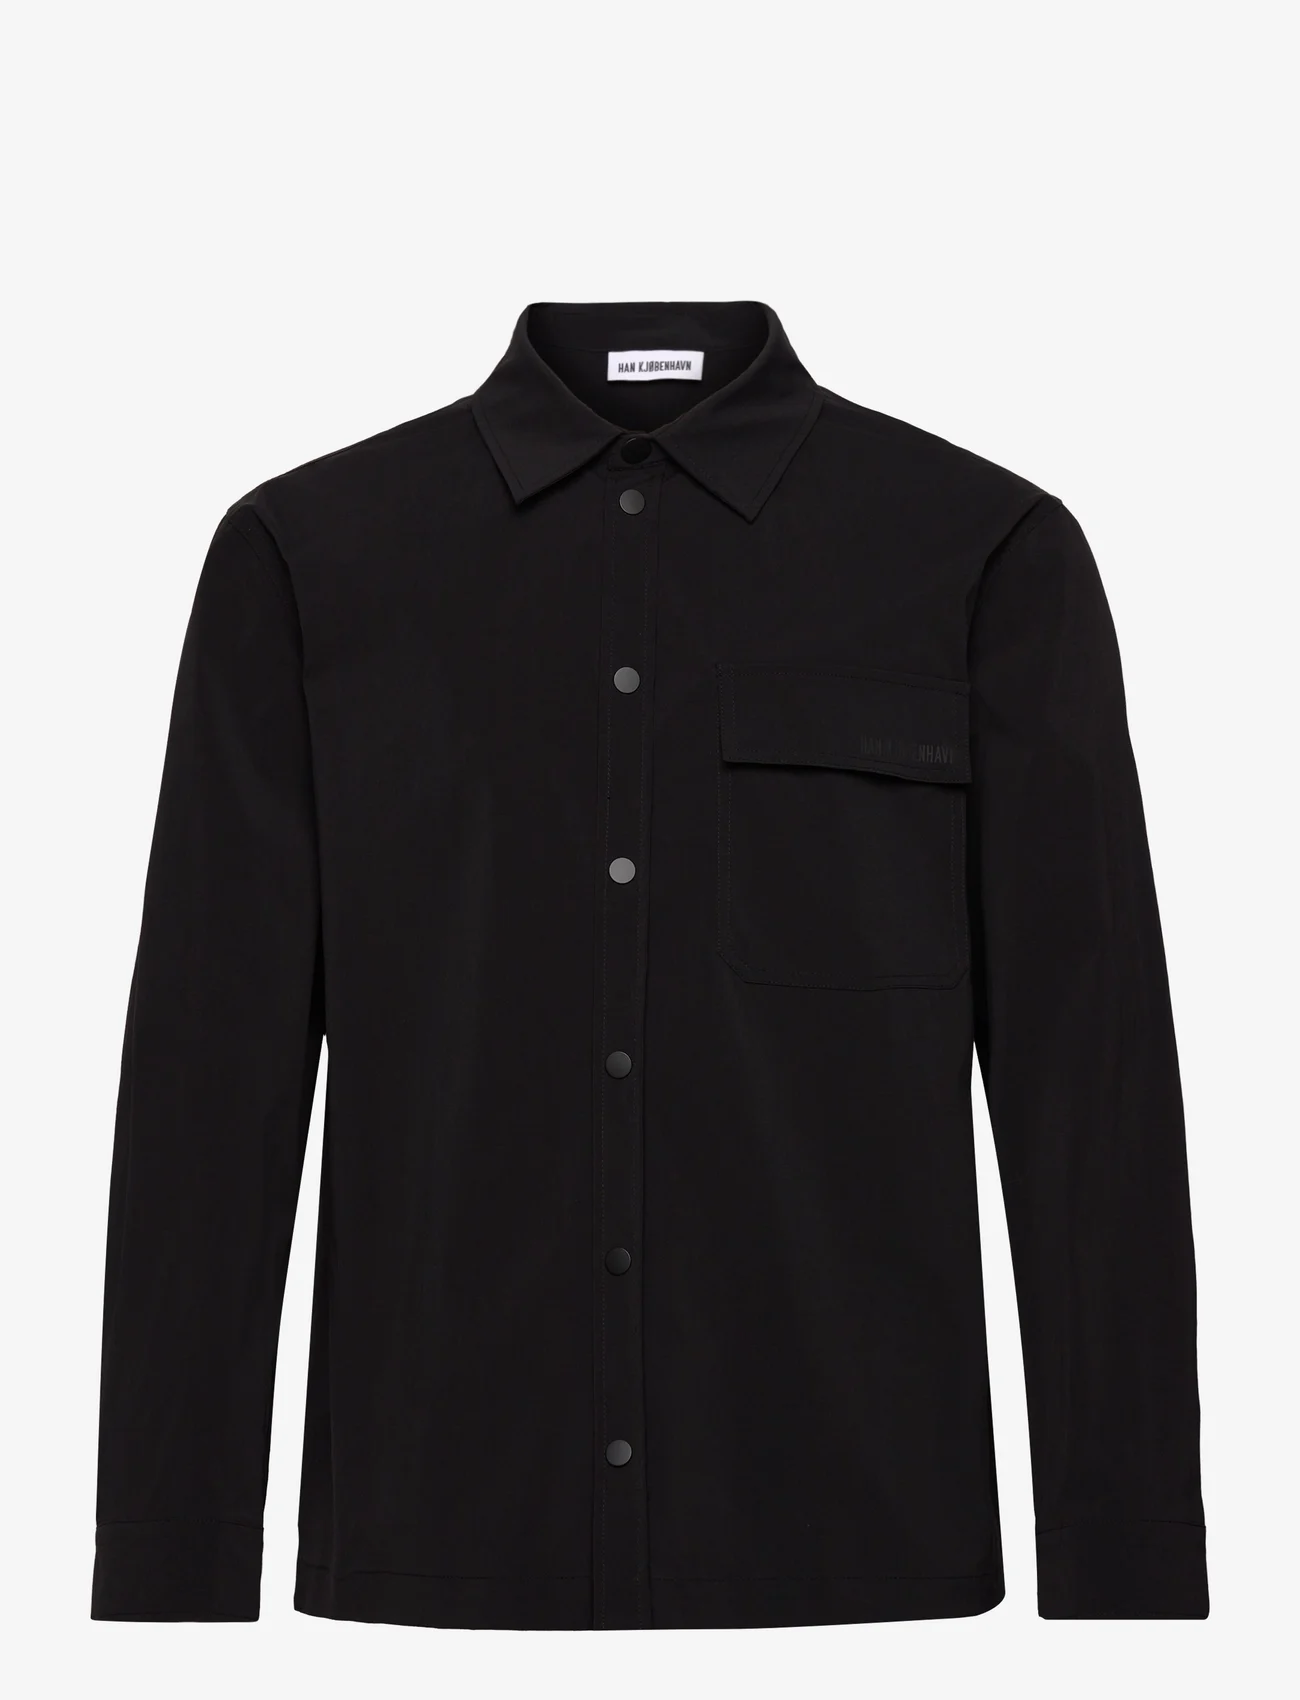 HAN Kjøbenhavn - Nylon Patch Pocket Shirt Long Sleeve - herren - black - 0